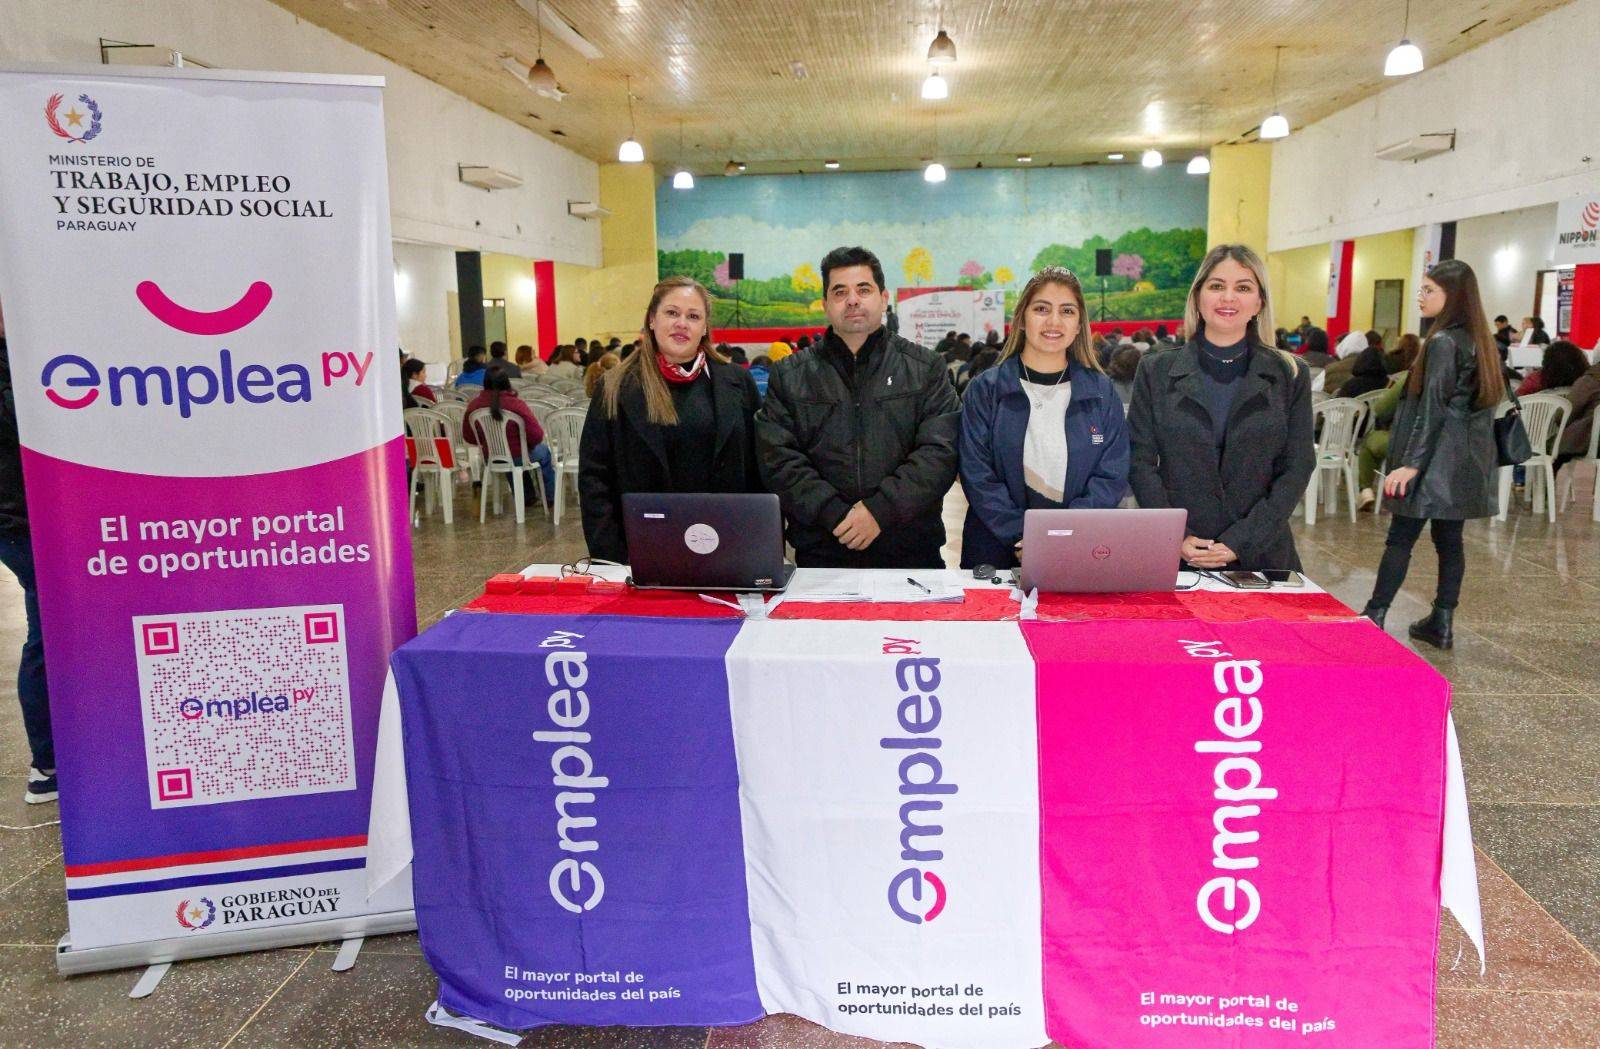 Feria de Empleo en Minga Guazú convocó a más de 500 interesados